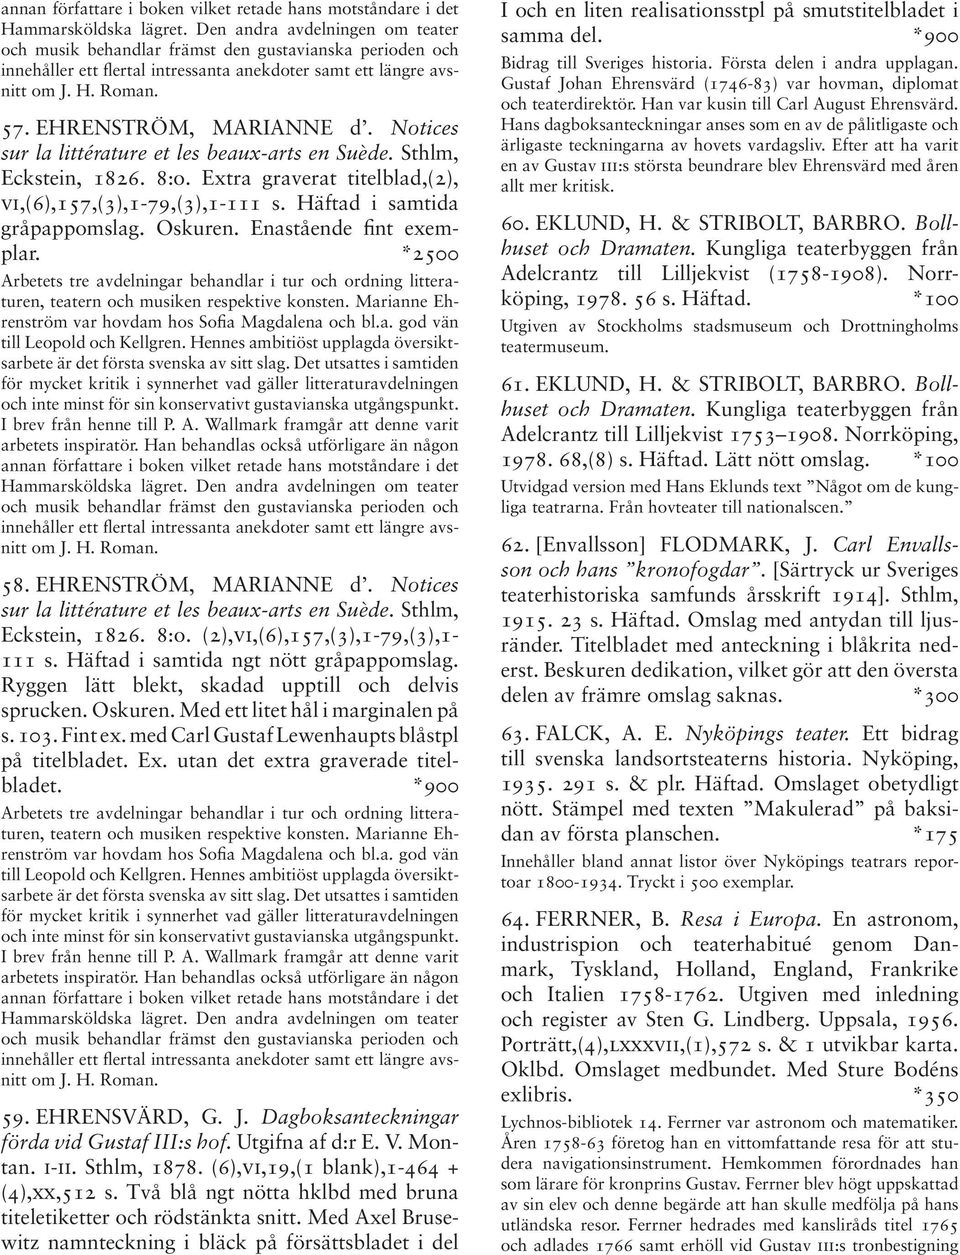 EHRENSTRÖM, MARIANNE d. Notices sur la littérature et les beaux-arts en Suède. Sthlm, Eckstein, 1826. 8:o. Extra graverat titelblad,(2), vi,(6),157,(3),1-79,(3),1-111 s.